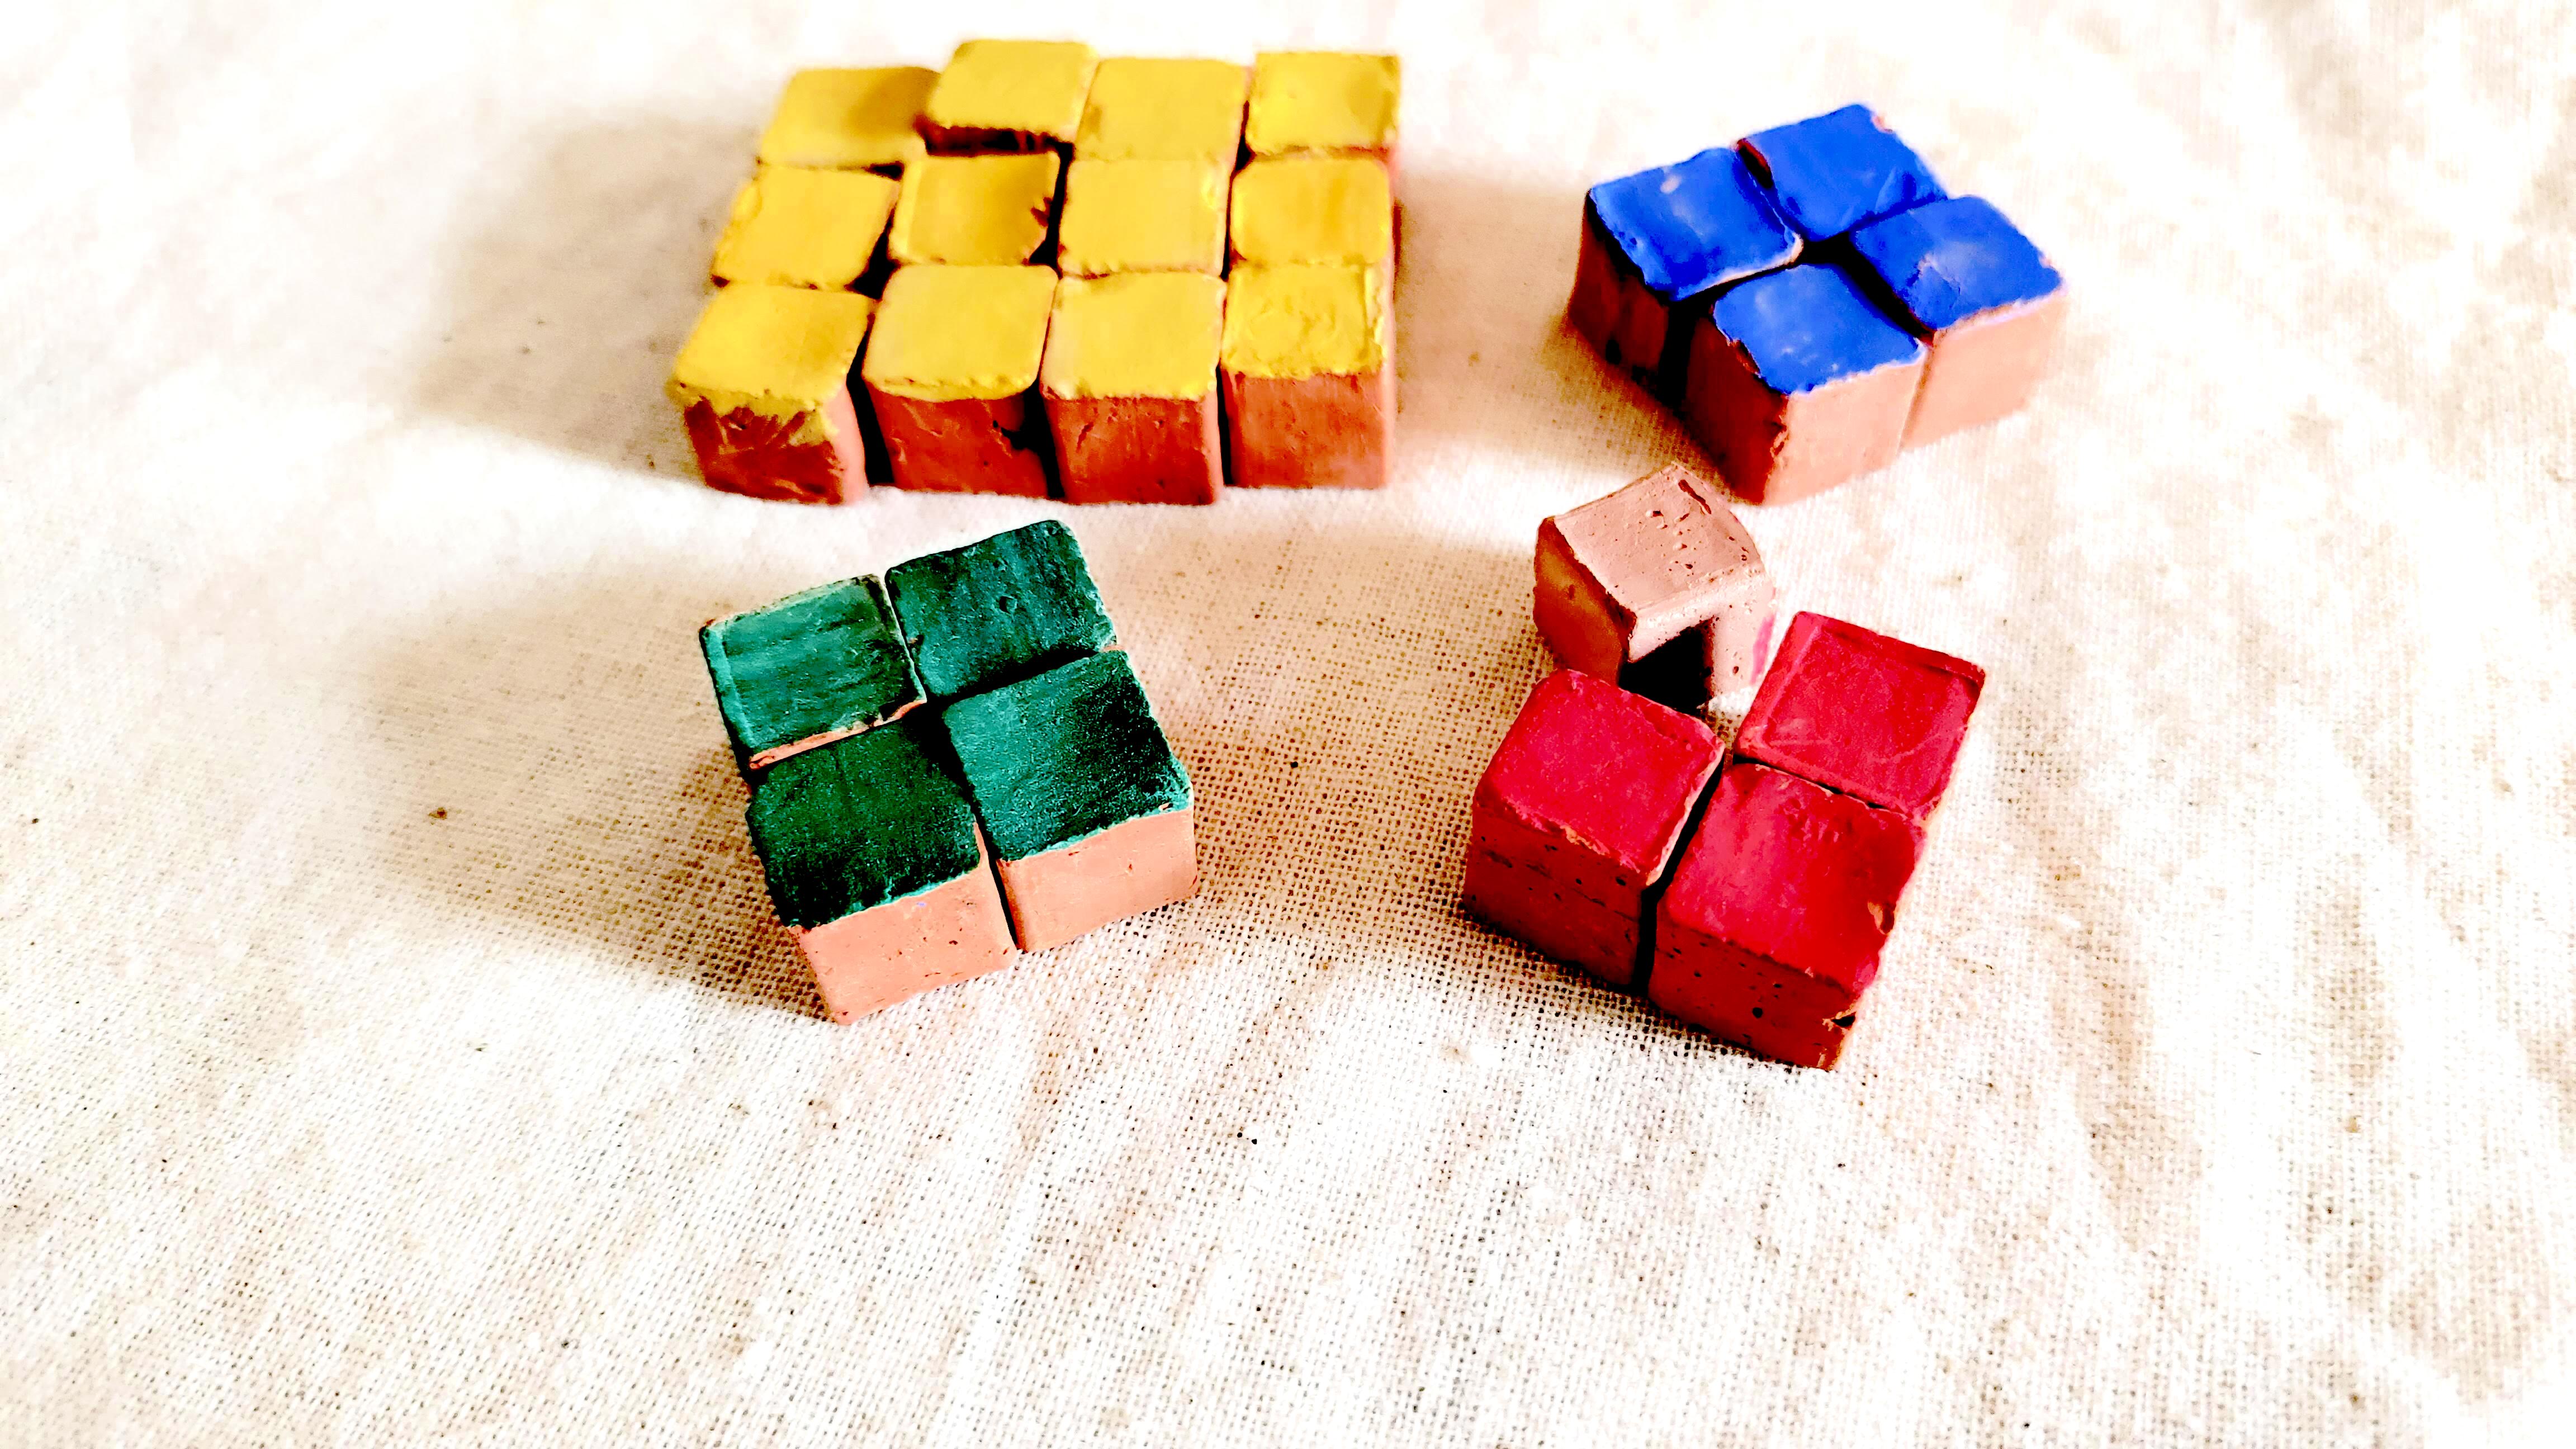 Chaturvimshathi Koshtaka: Game of 24 squares